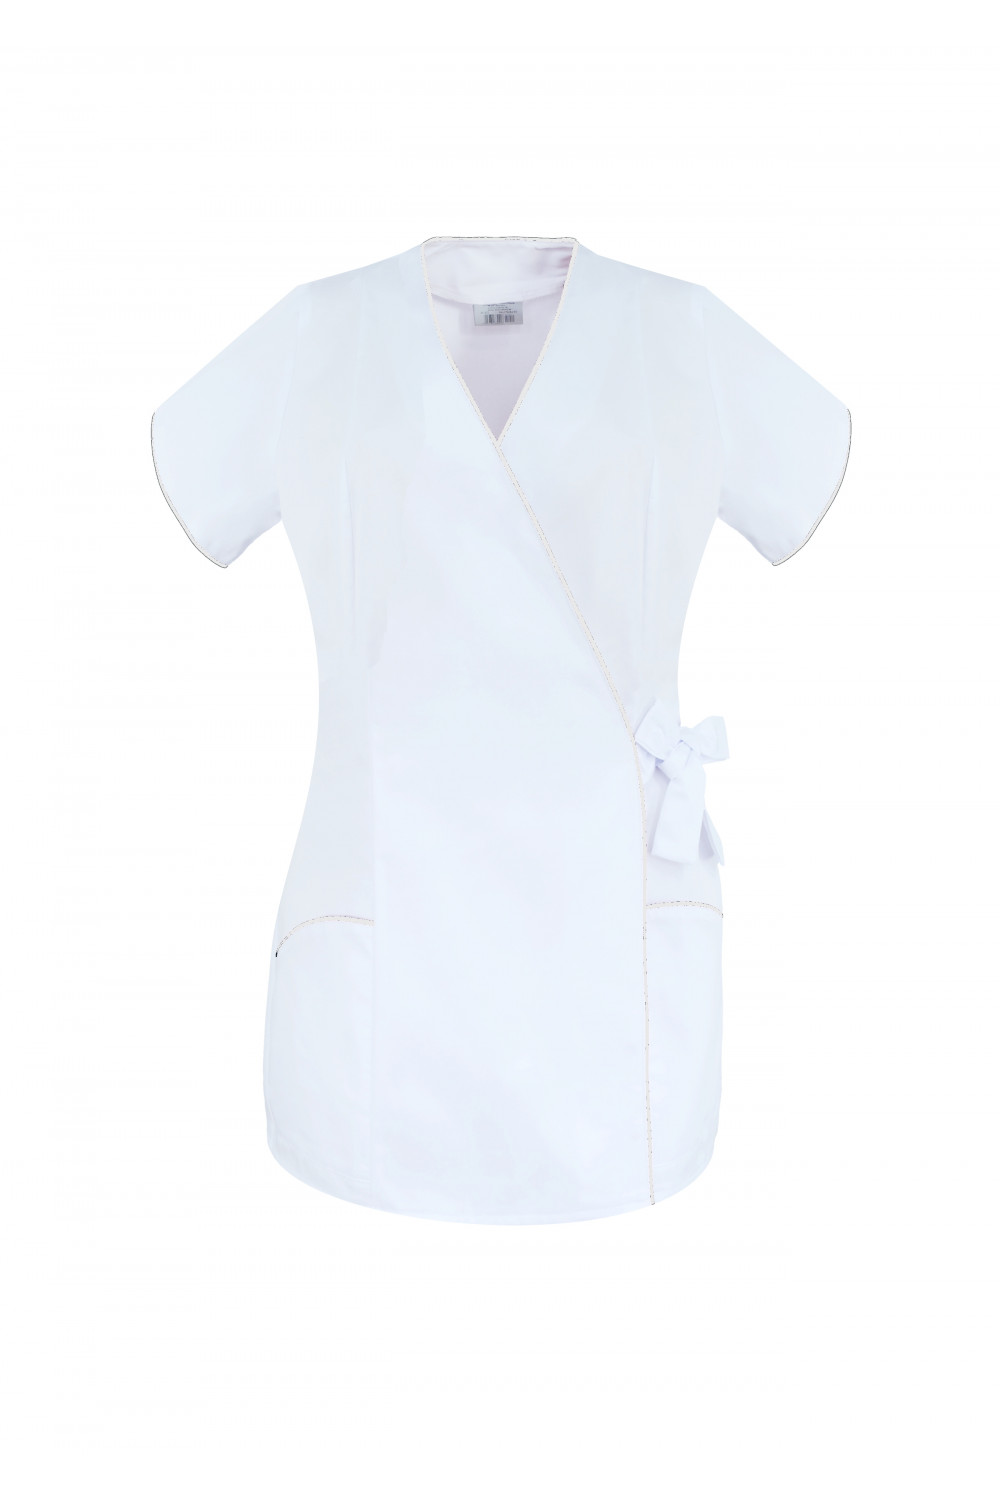 M-322 Żakiet damski wiązany medyczny kosmetyczny fryzjerski SPA uniform kolor biały